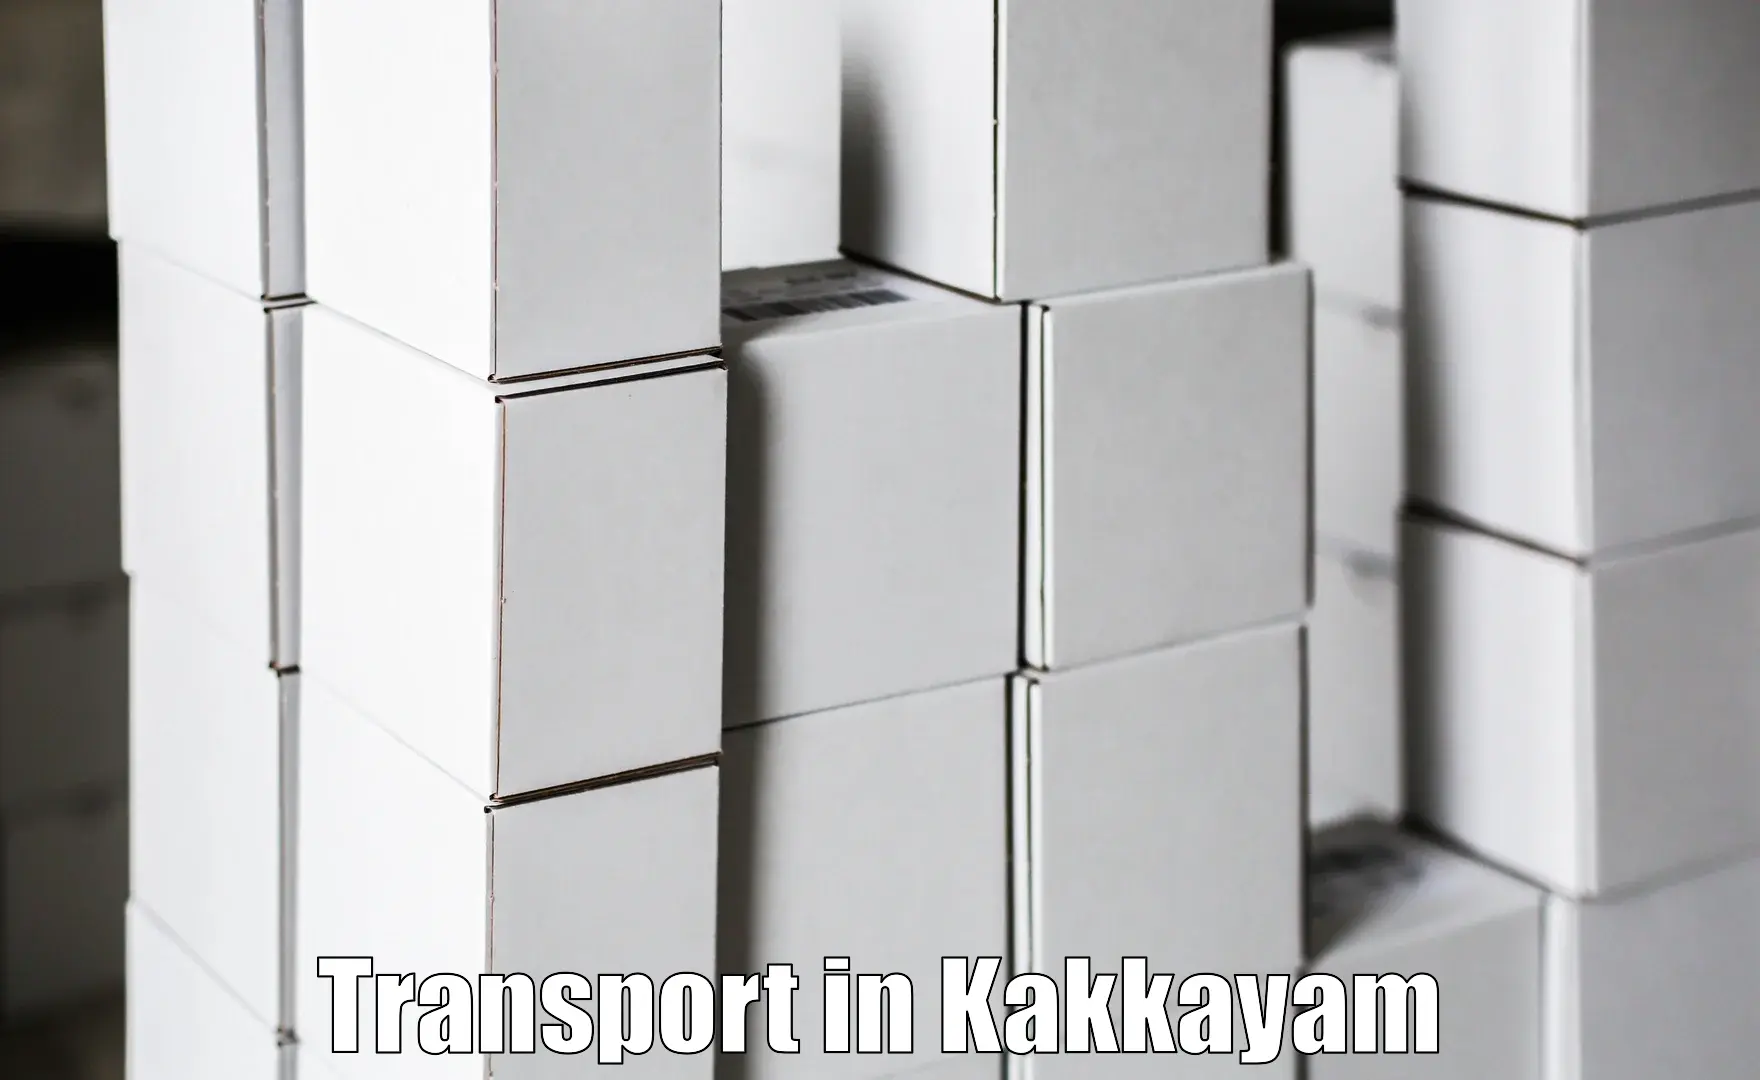 Intercity goods transport in Kakkayam